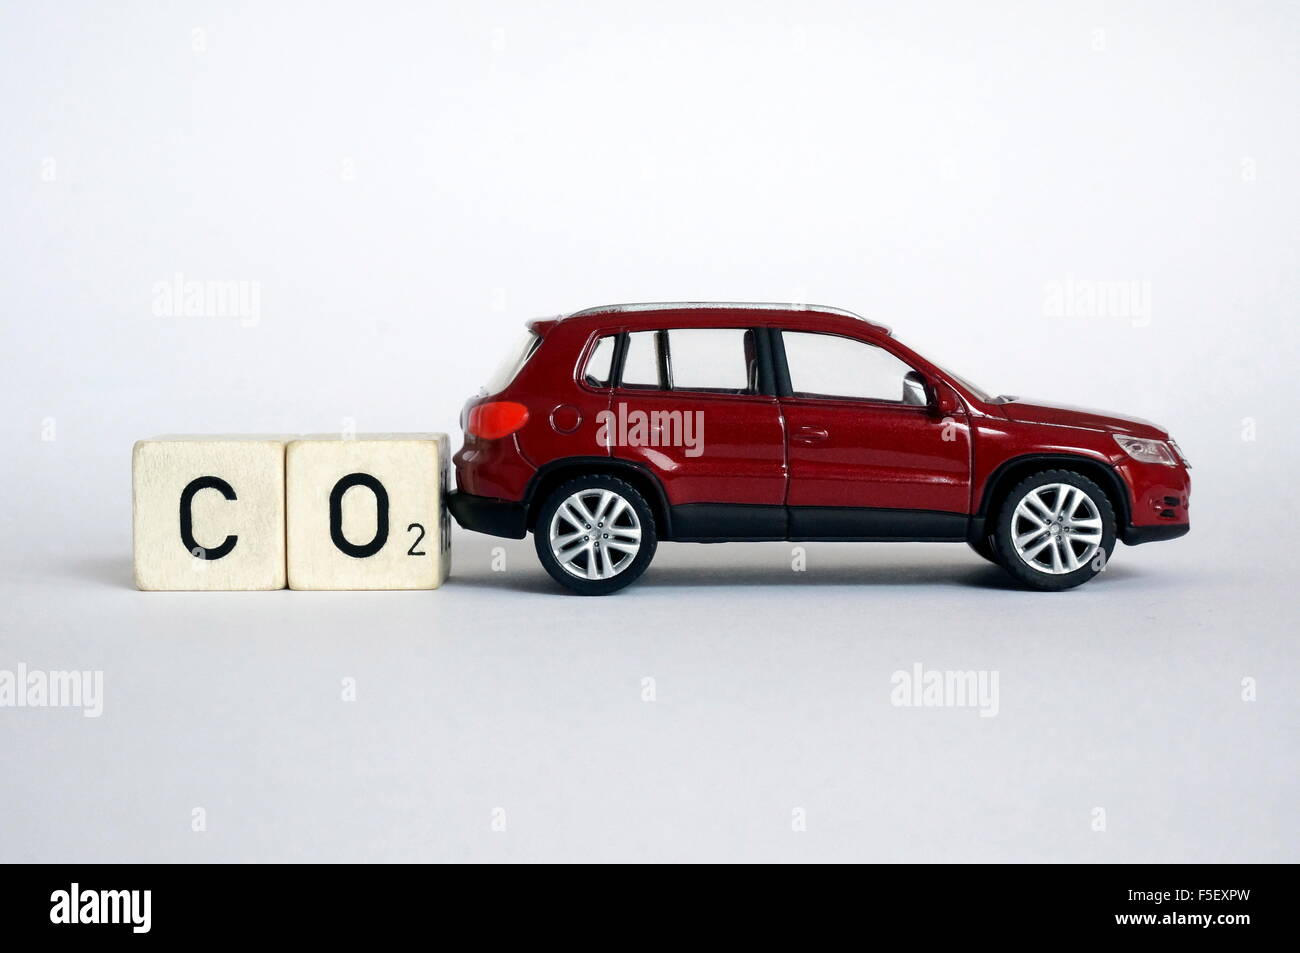 ILLUSTRATION - ein Volkswagen Auto Modell "VW Tiguan" vor Cube-Briefe, die die gesamte Formel "CO2" für Kohlendioxid zu schreiben. Das Foto wurde am 15. Oktober 2015. Foto: S. Steinach - kein Draht-SERVICE – Stockfoto